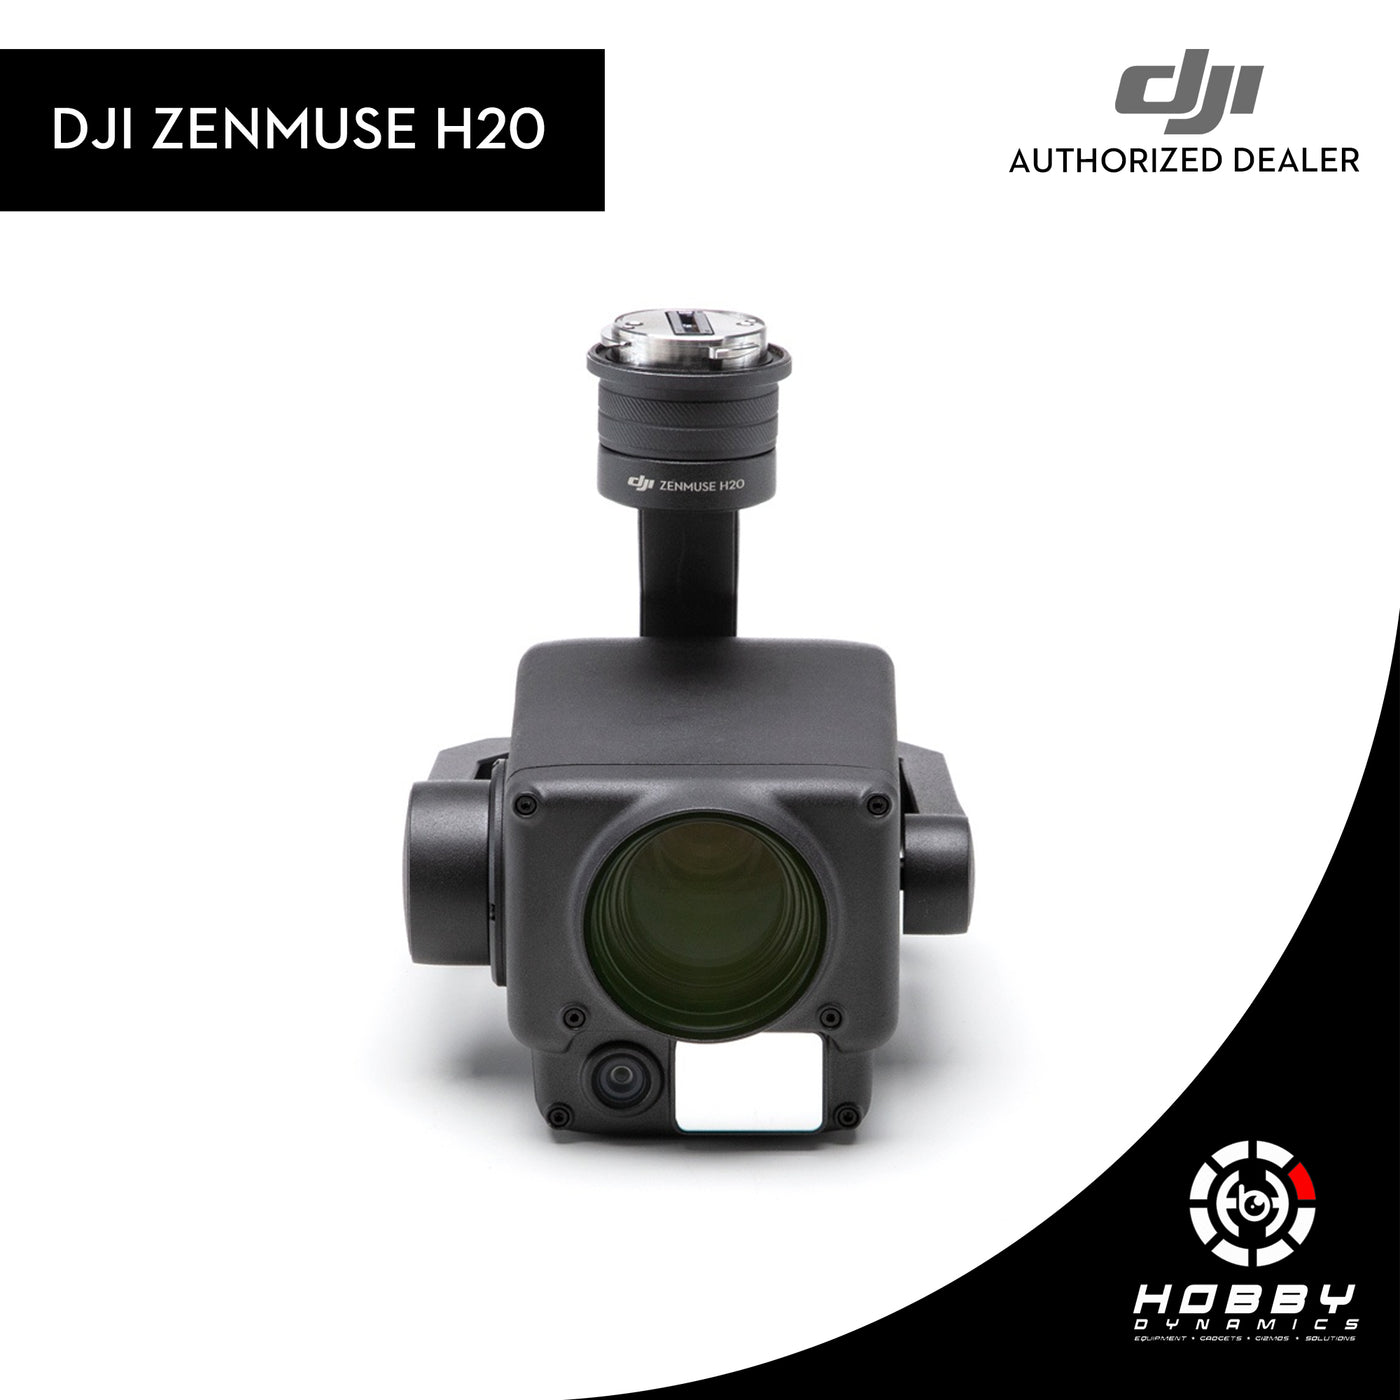 DJI Zenmuse H20 Series